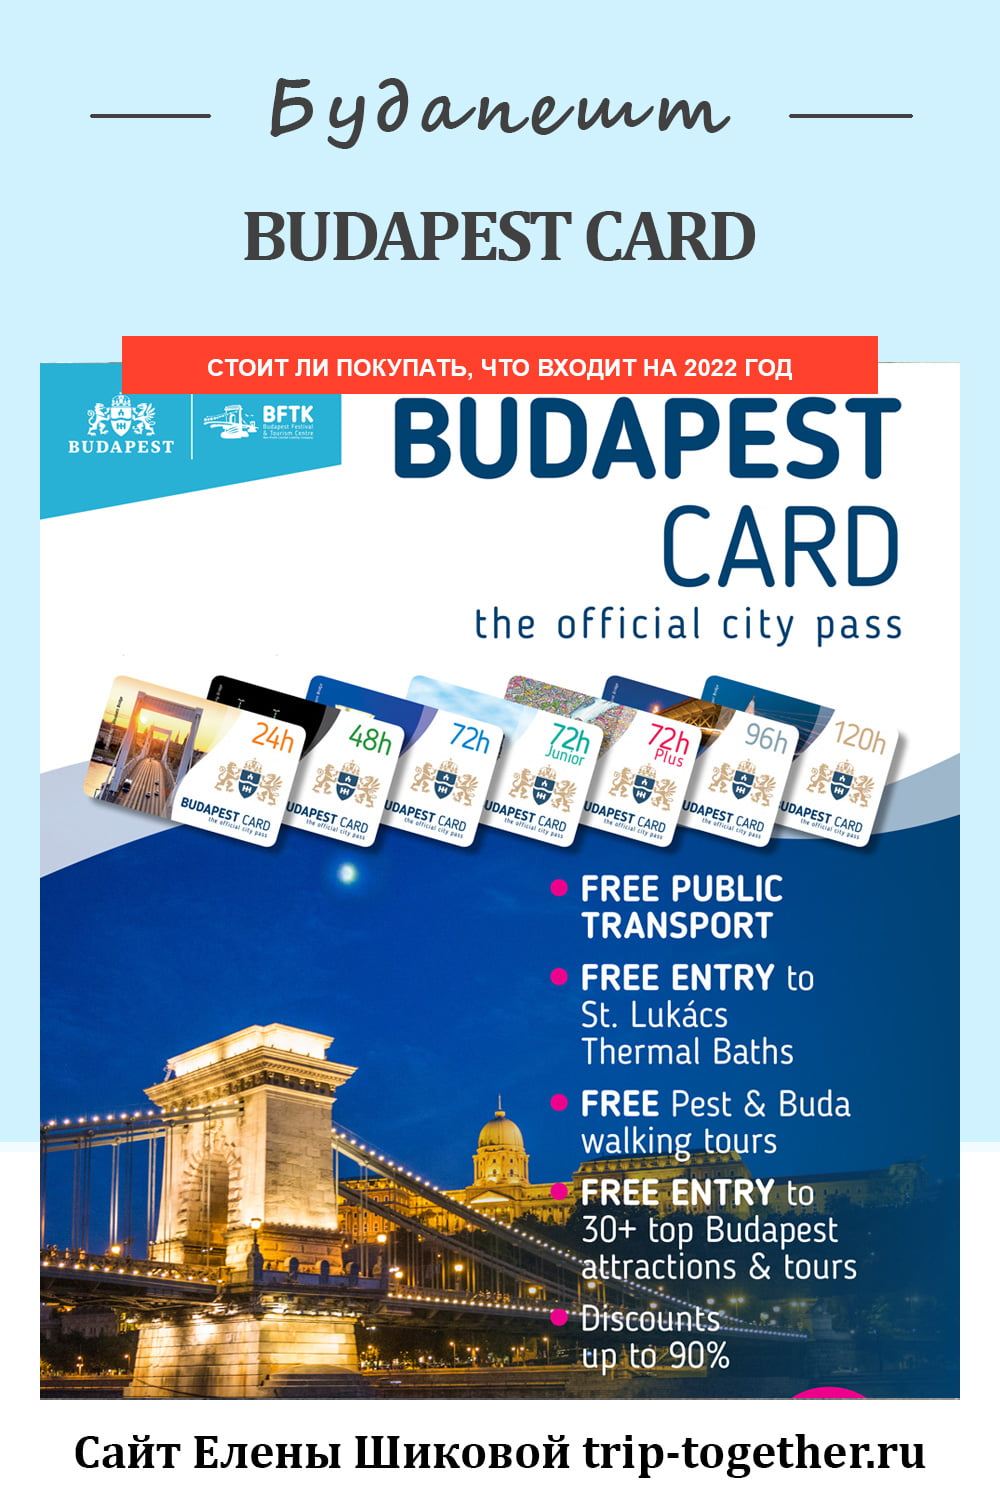 Стоит ли покупать Budapest card